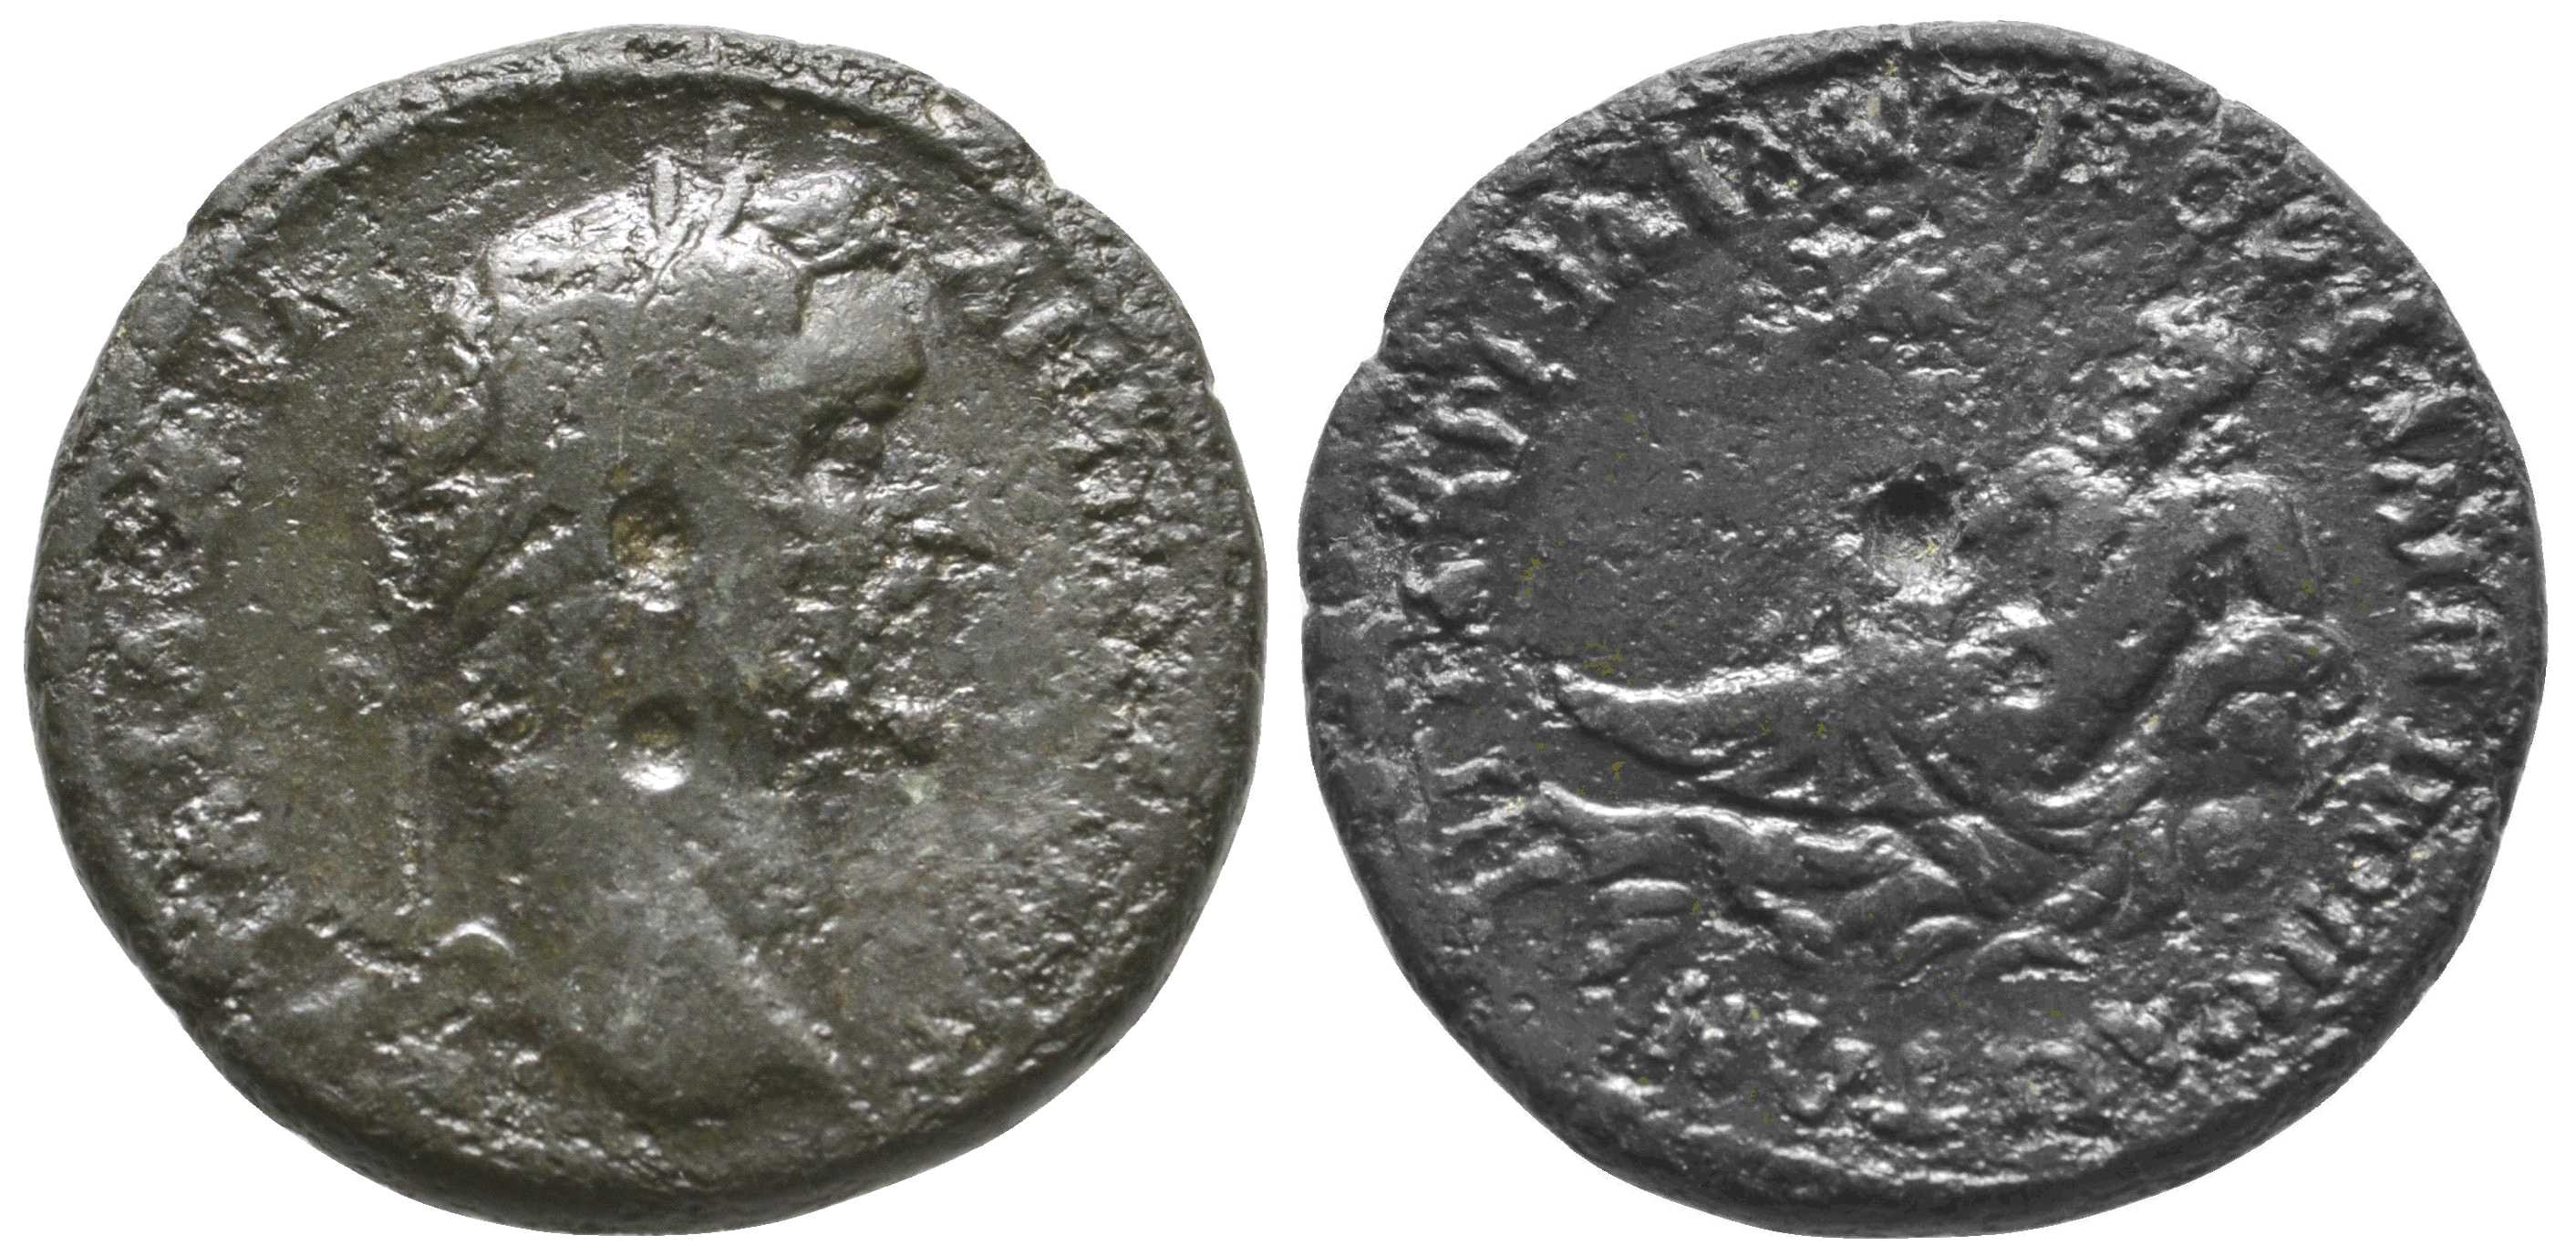 6211 Philippopolis Thracia Antoninus Pius AE